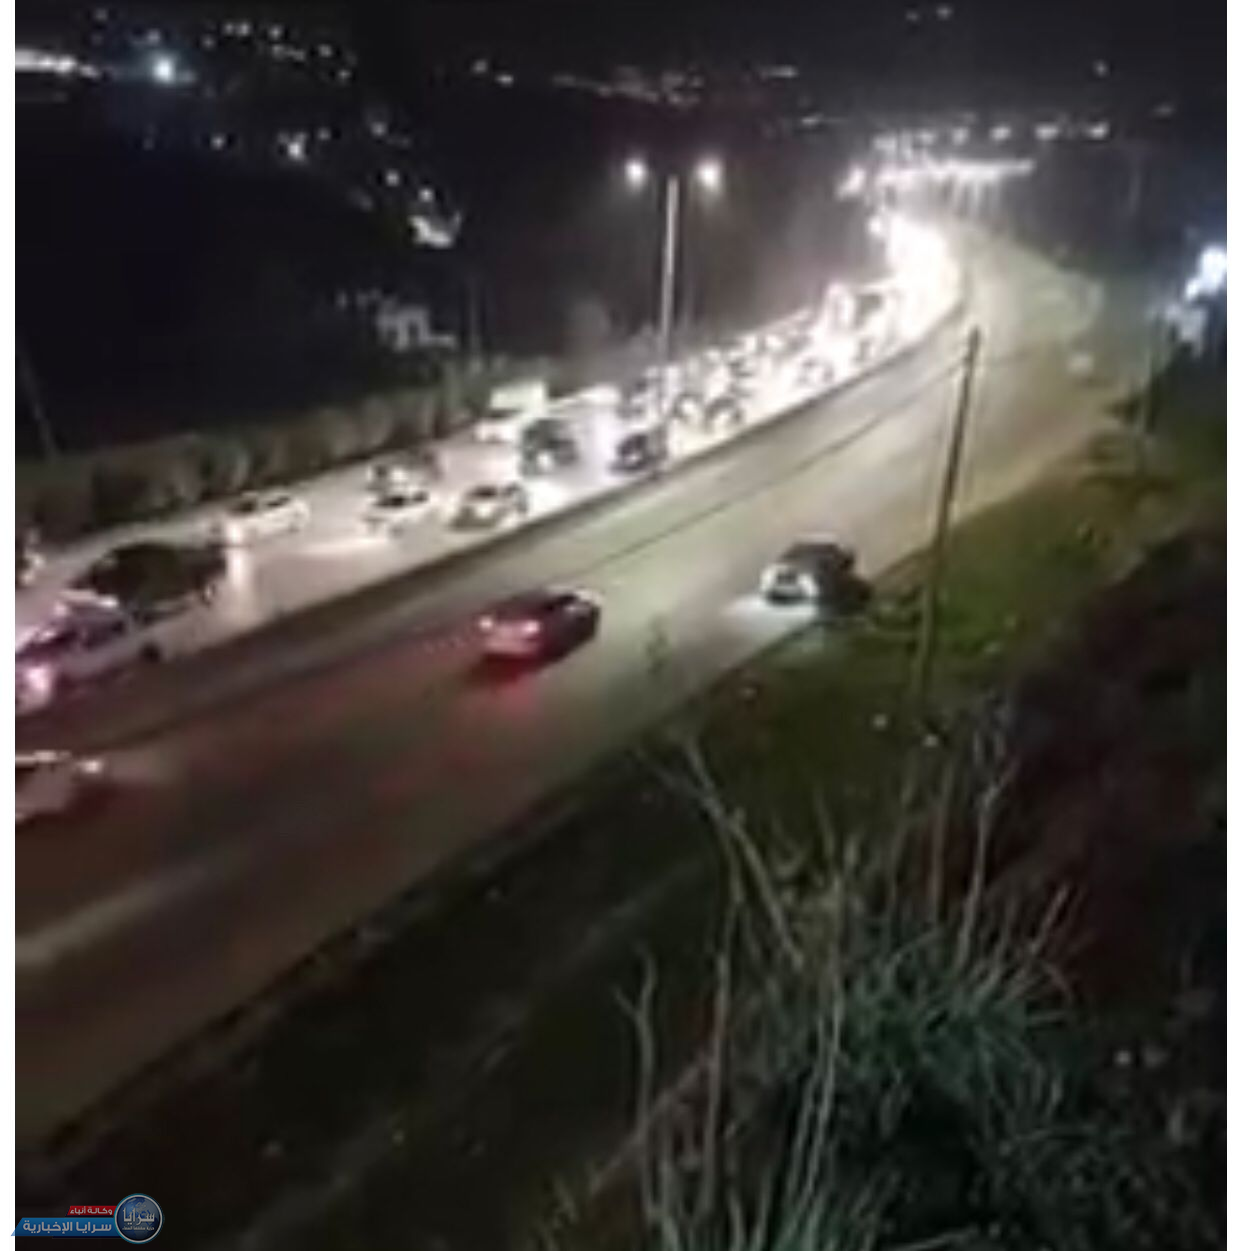 ضبط مركبة ظهرت خلال مقطع فيديو تسير بعكس الاتجاه على طريق عمان - اربد  ..  فيديو 